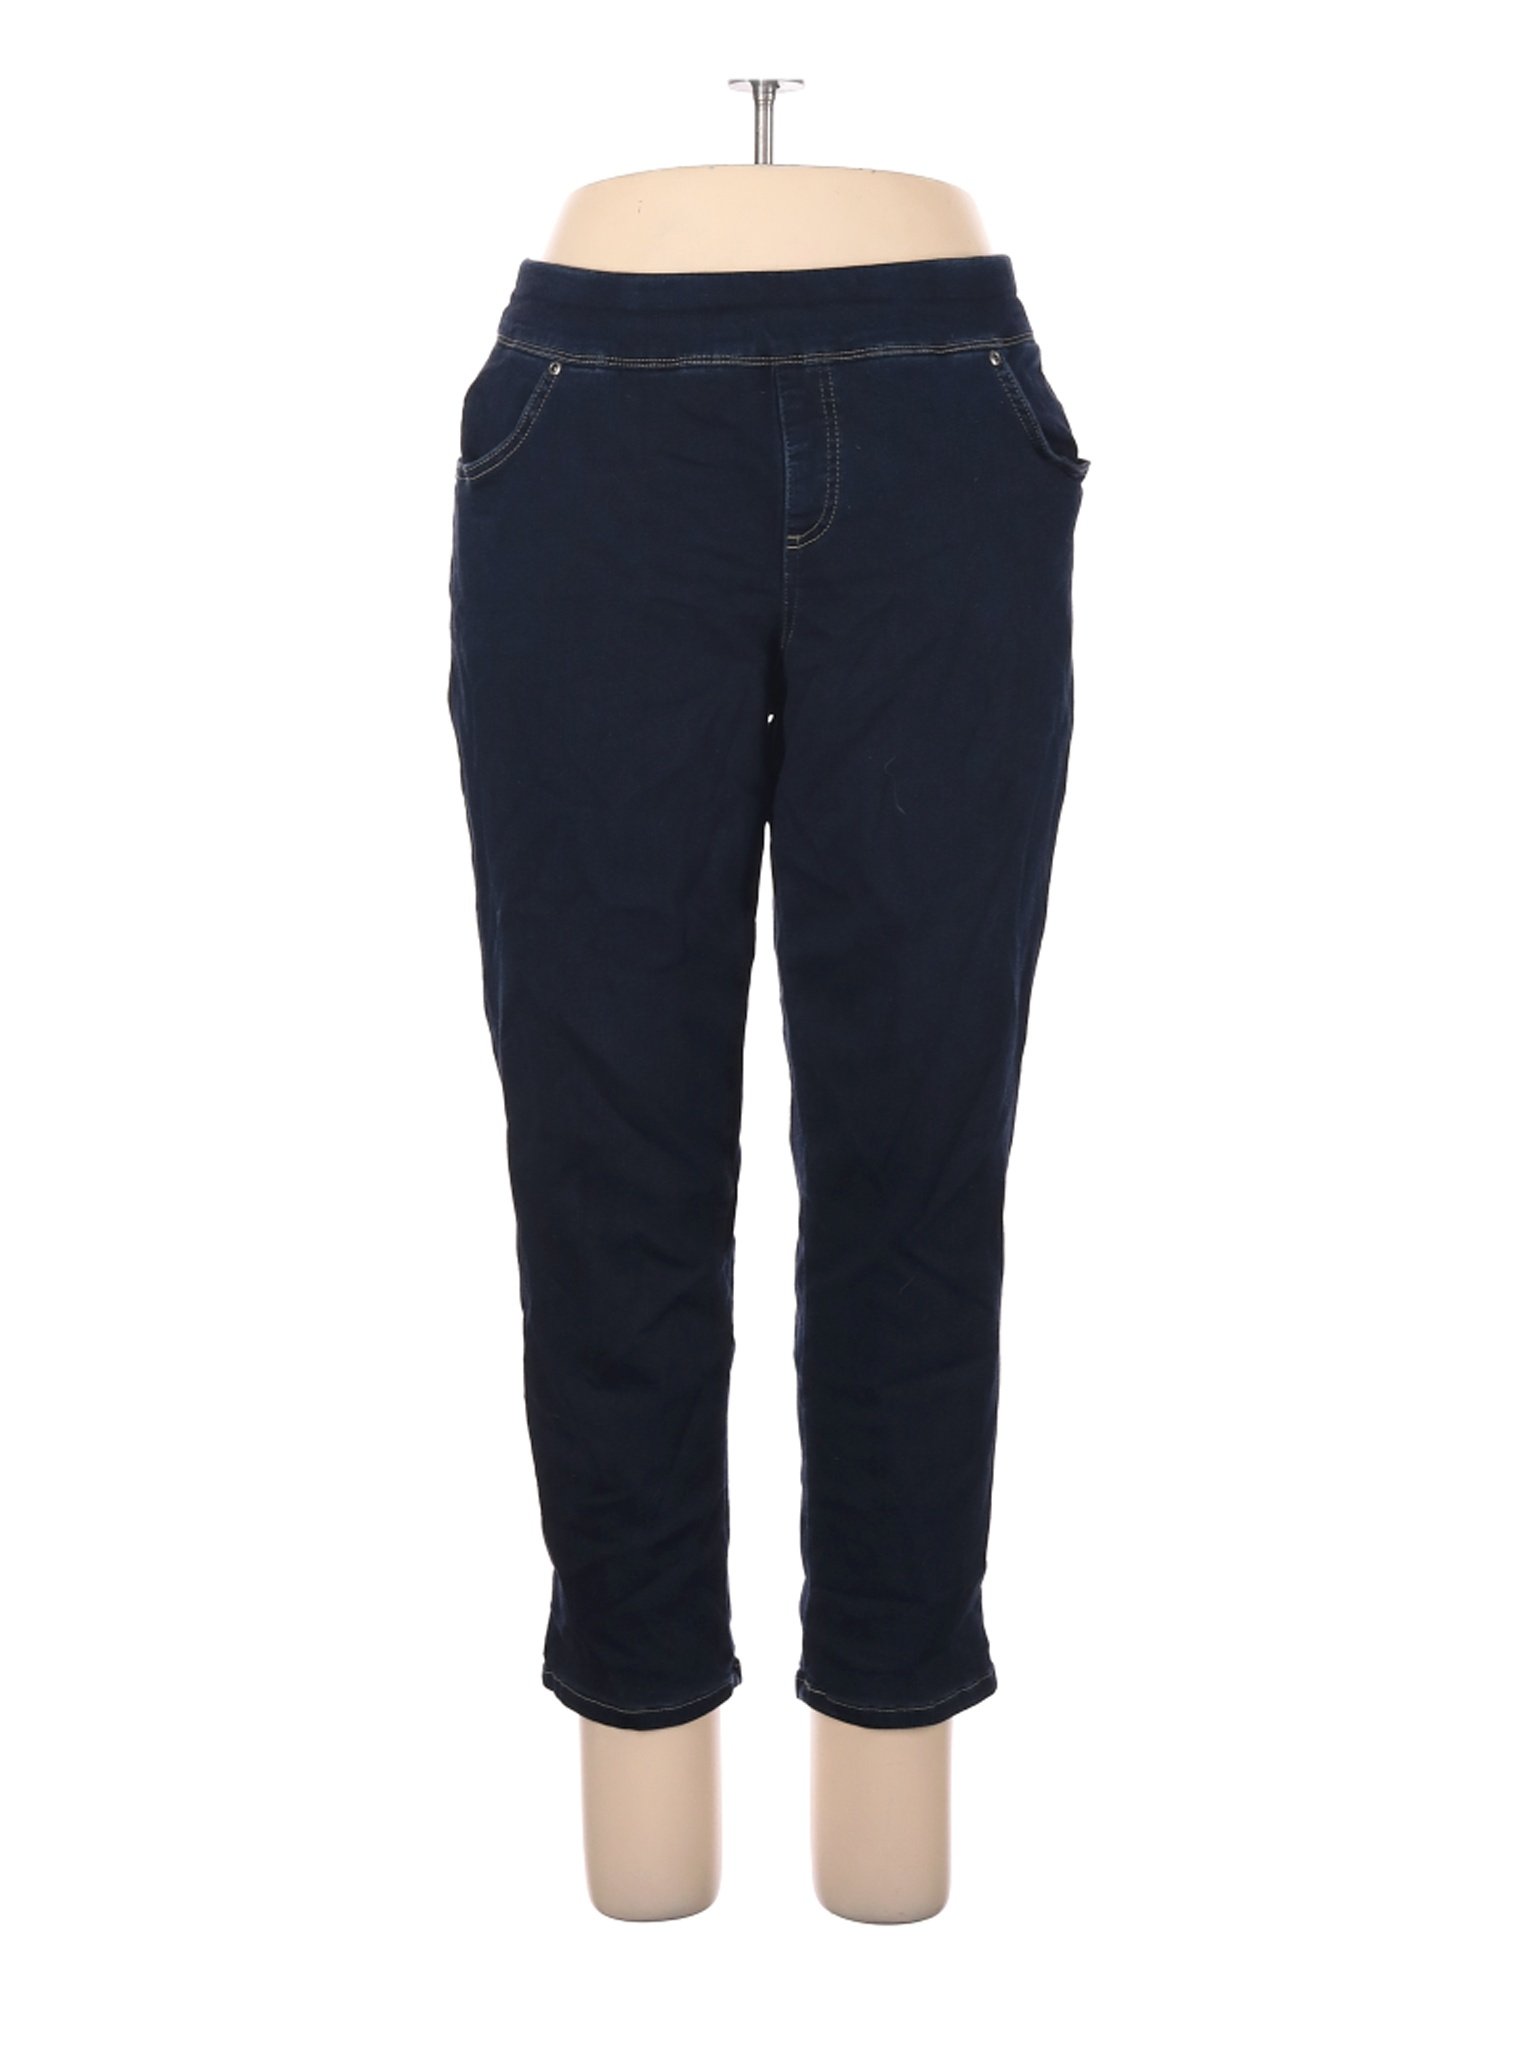 Terra & Sky Women Blue Jeans 1X Plus | eBay